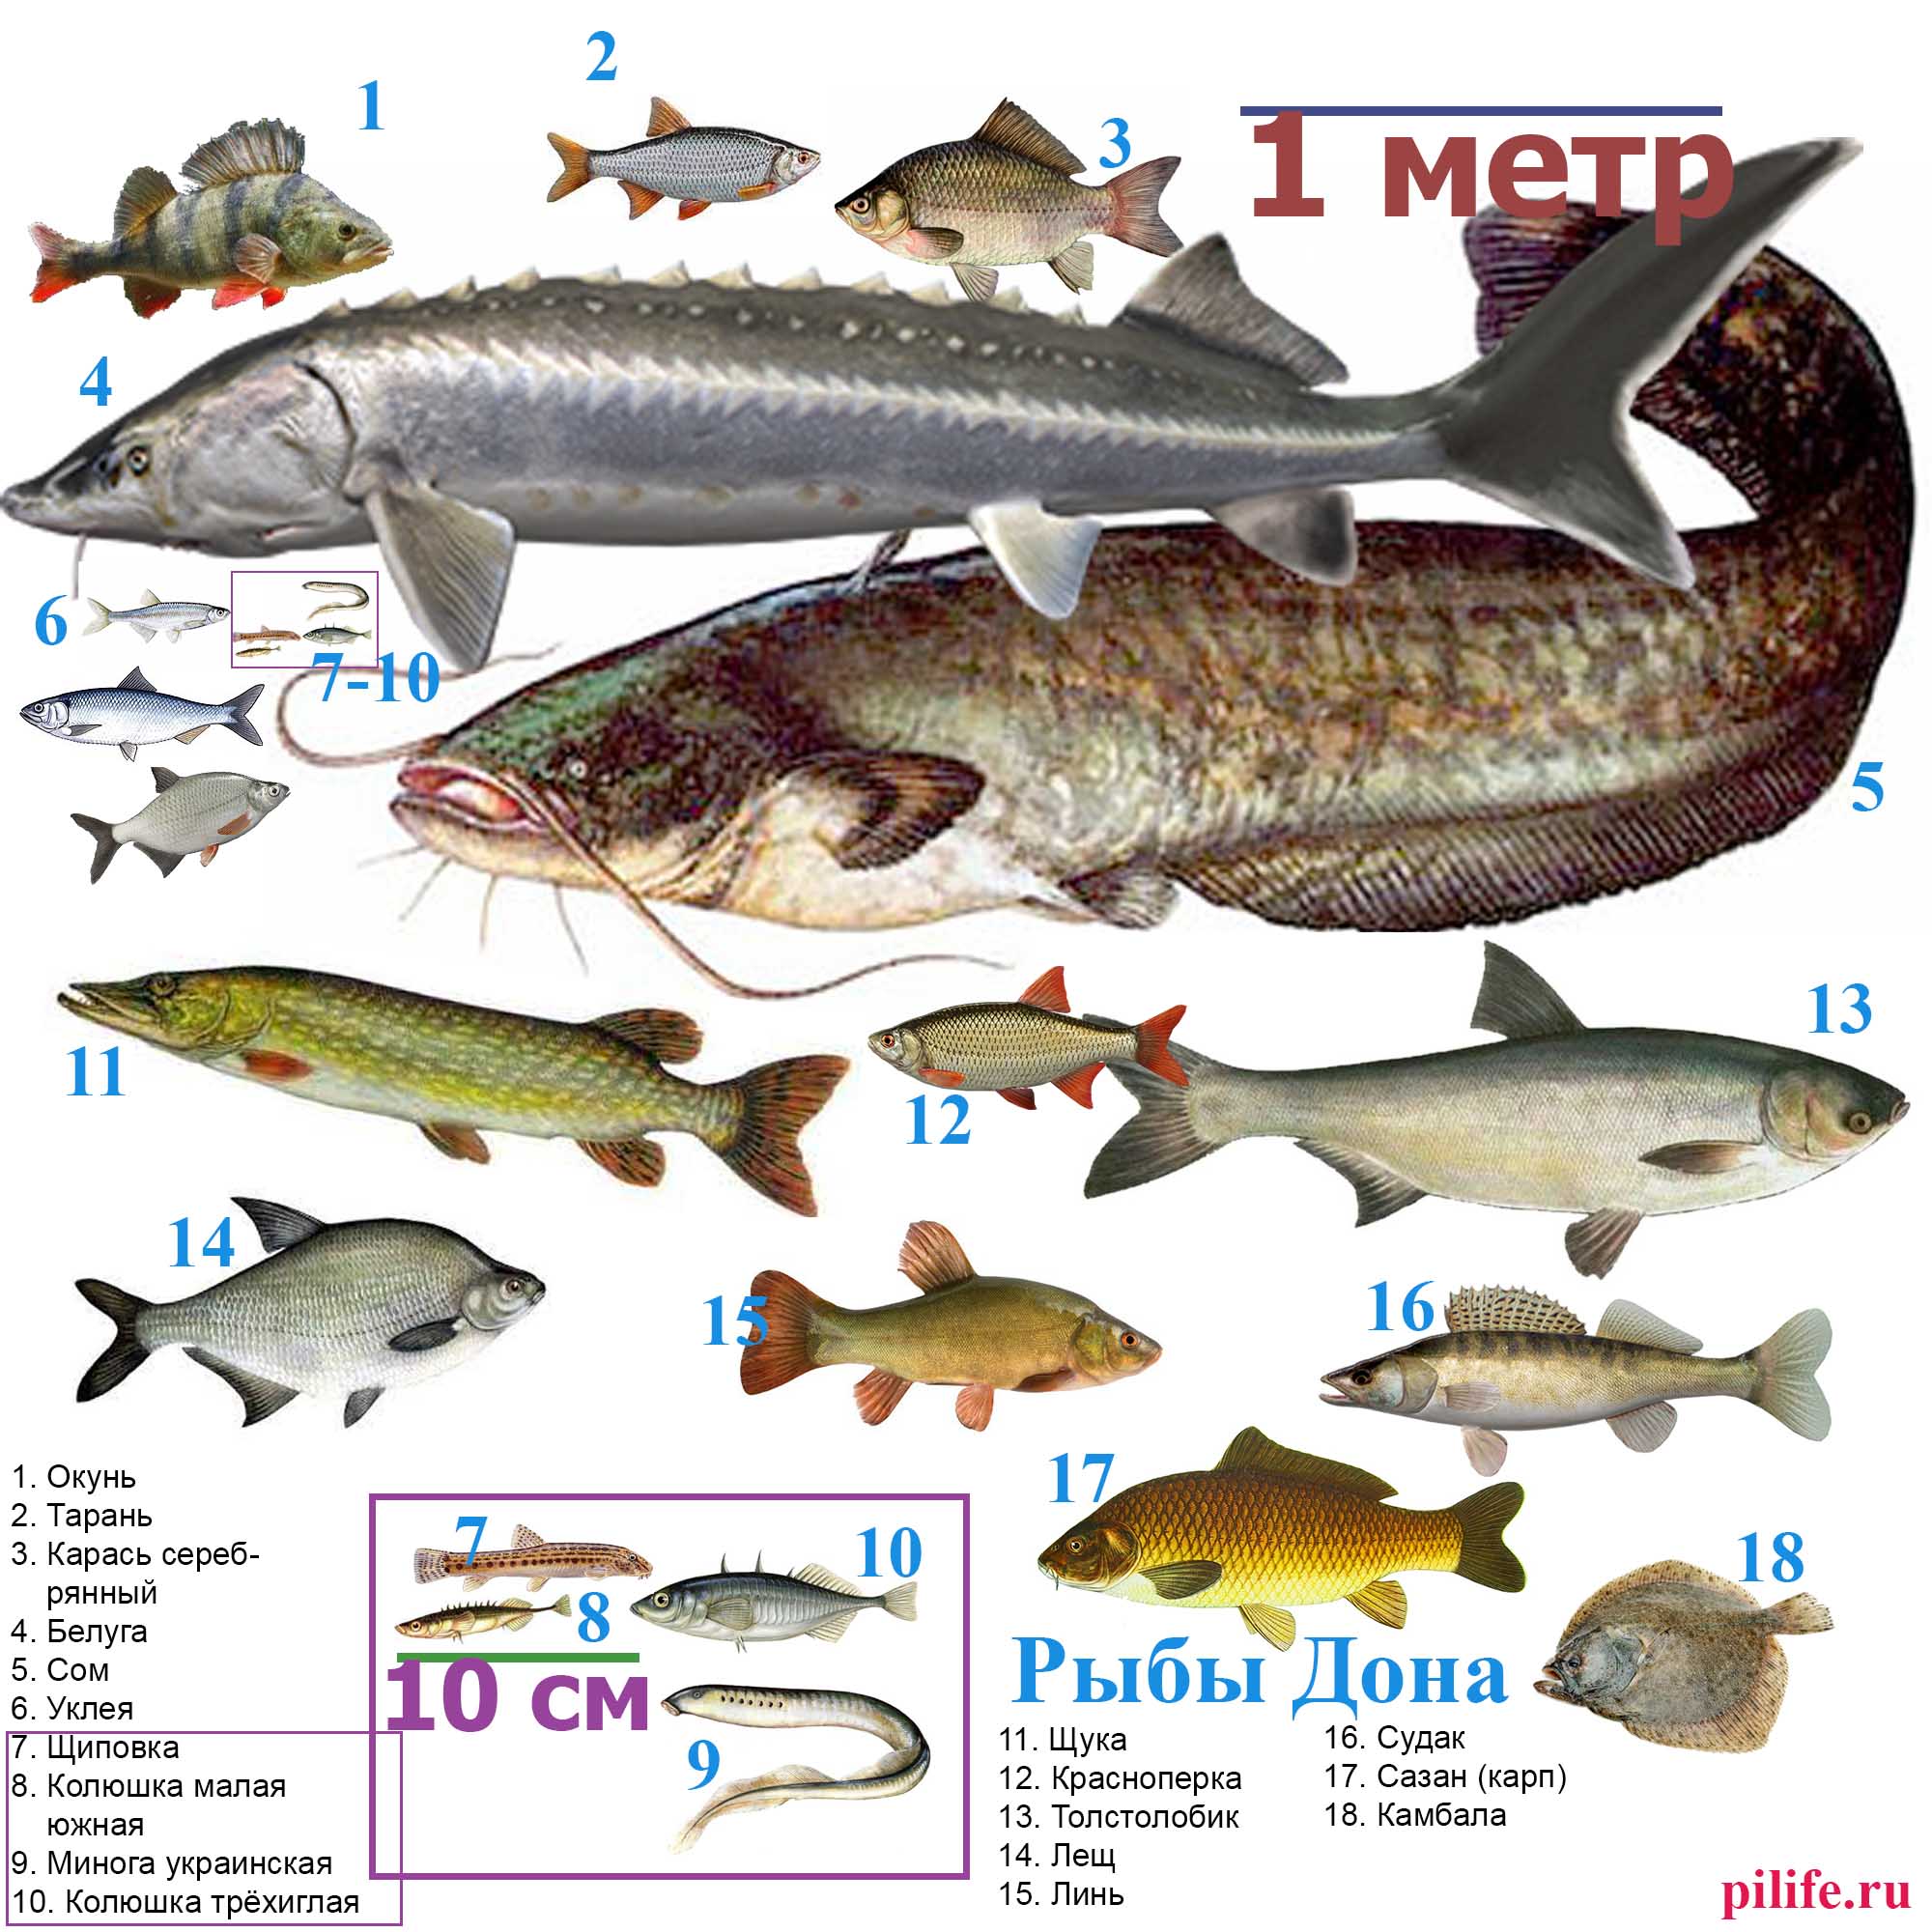 Распространённые виды рыб реки Дон в масштабе.